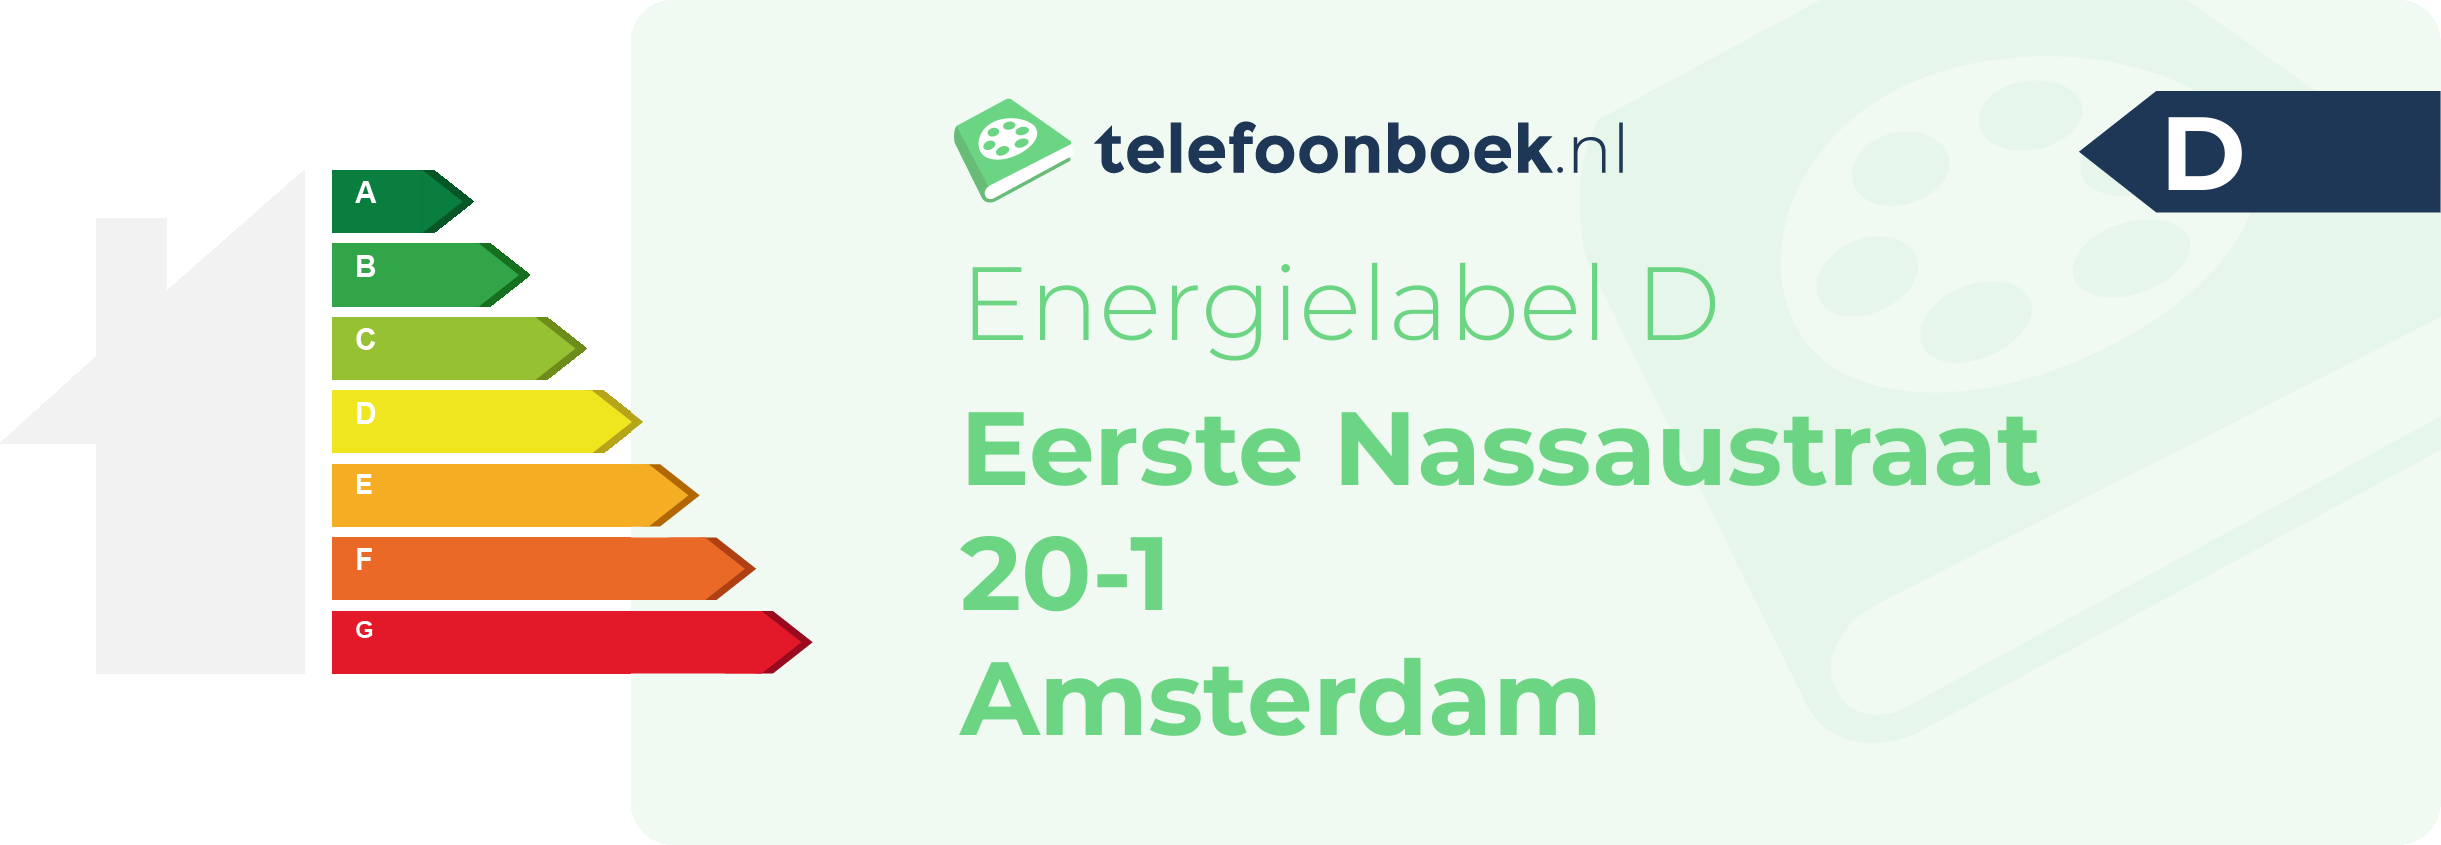 Energielabel Eerste Nassaustraat 20-1 Amsterdam